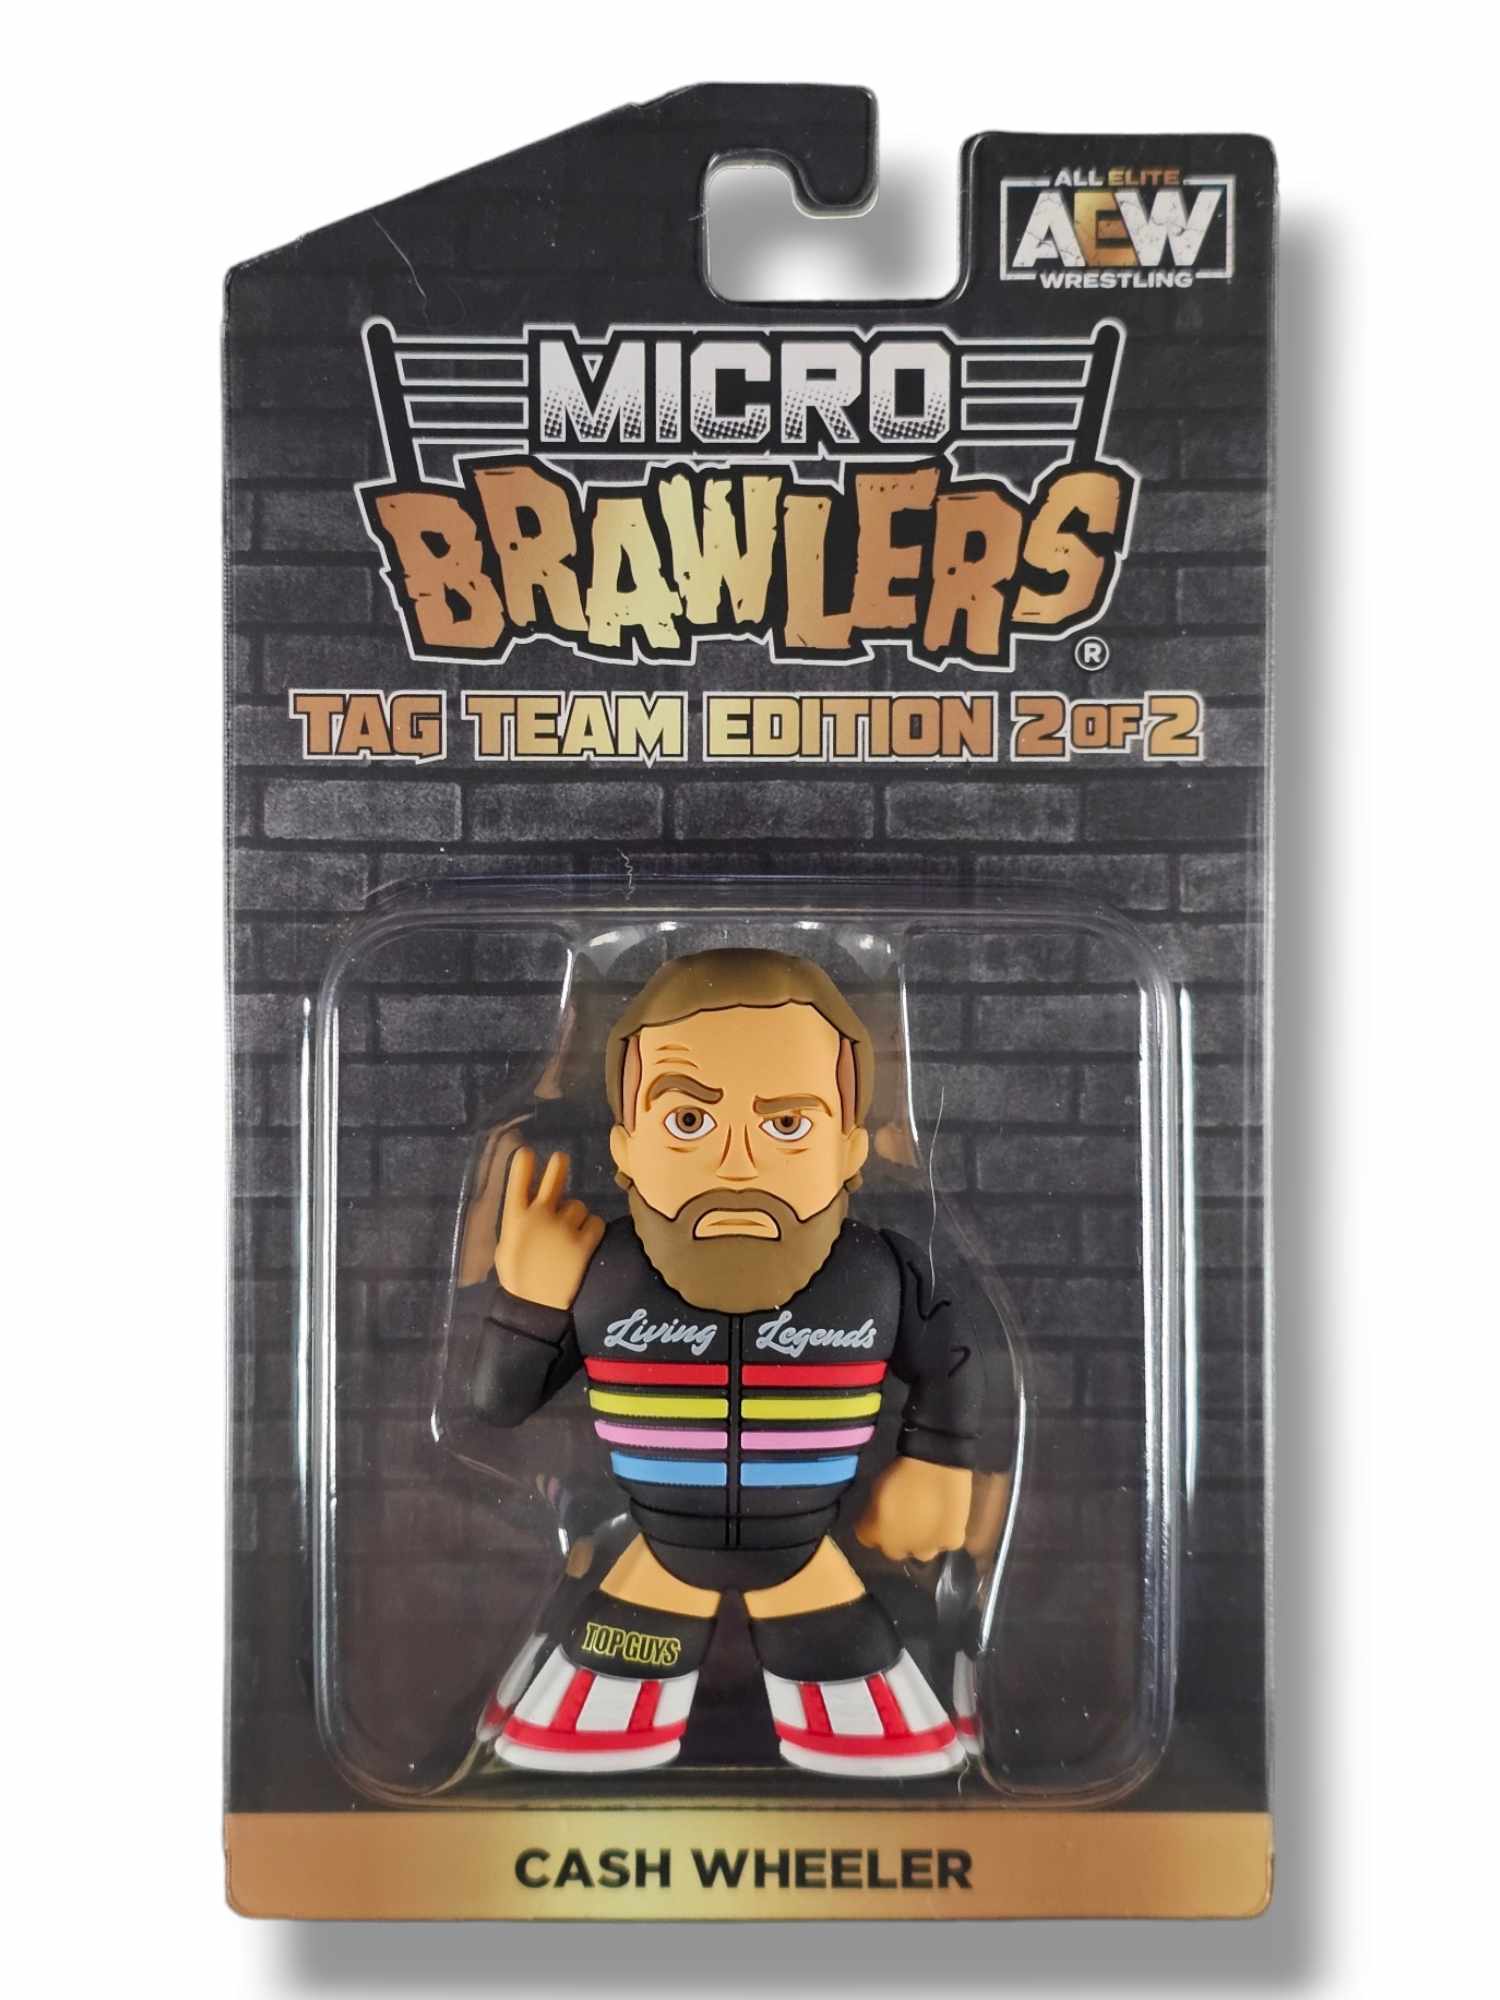 Micro Brawlers, Other